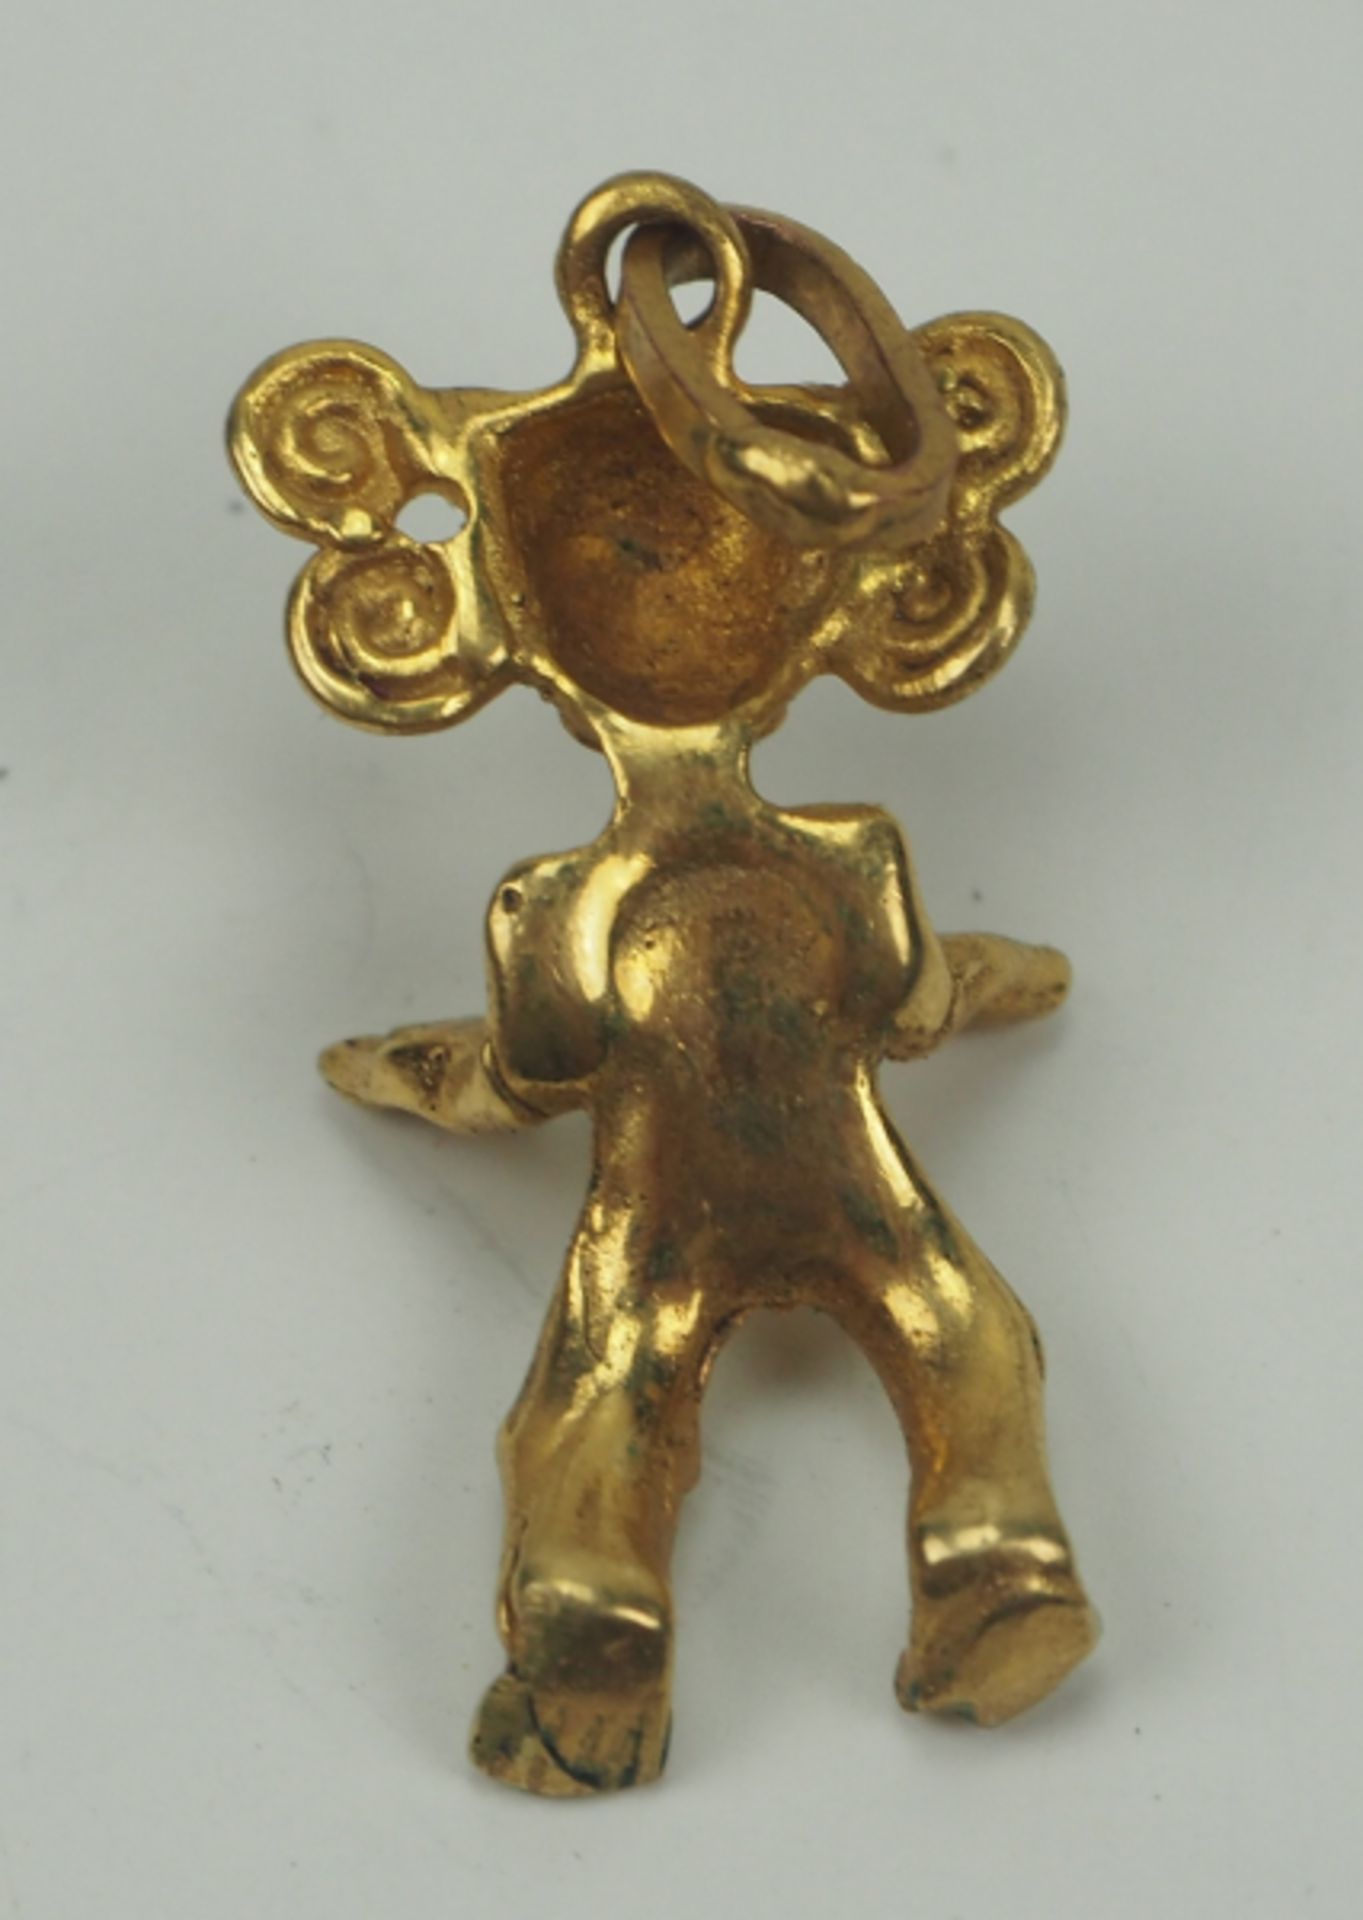 Lateinamerika - Goldfiguren Anhänger.Gold, lokale Fertigung, ungemarkt, Höhe 25 mm, 2,26 g. - Bild 2 aus 3